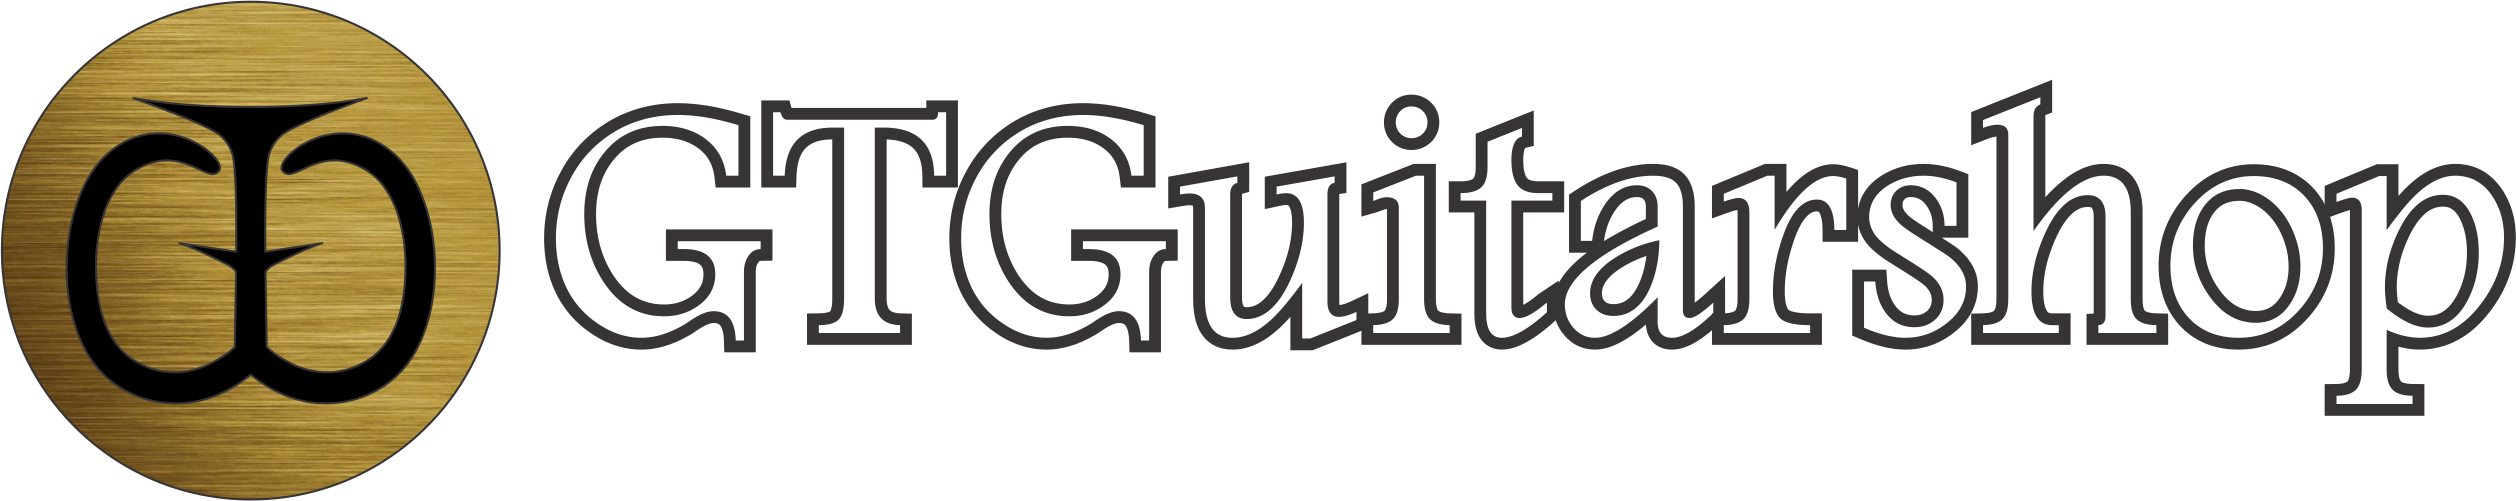 ĐÀN GUITAR BÌNH THẠNH | GTGuitarshop | Phân Phối Thuận Guitar - Ân Guitar Chính Hãng